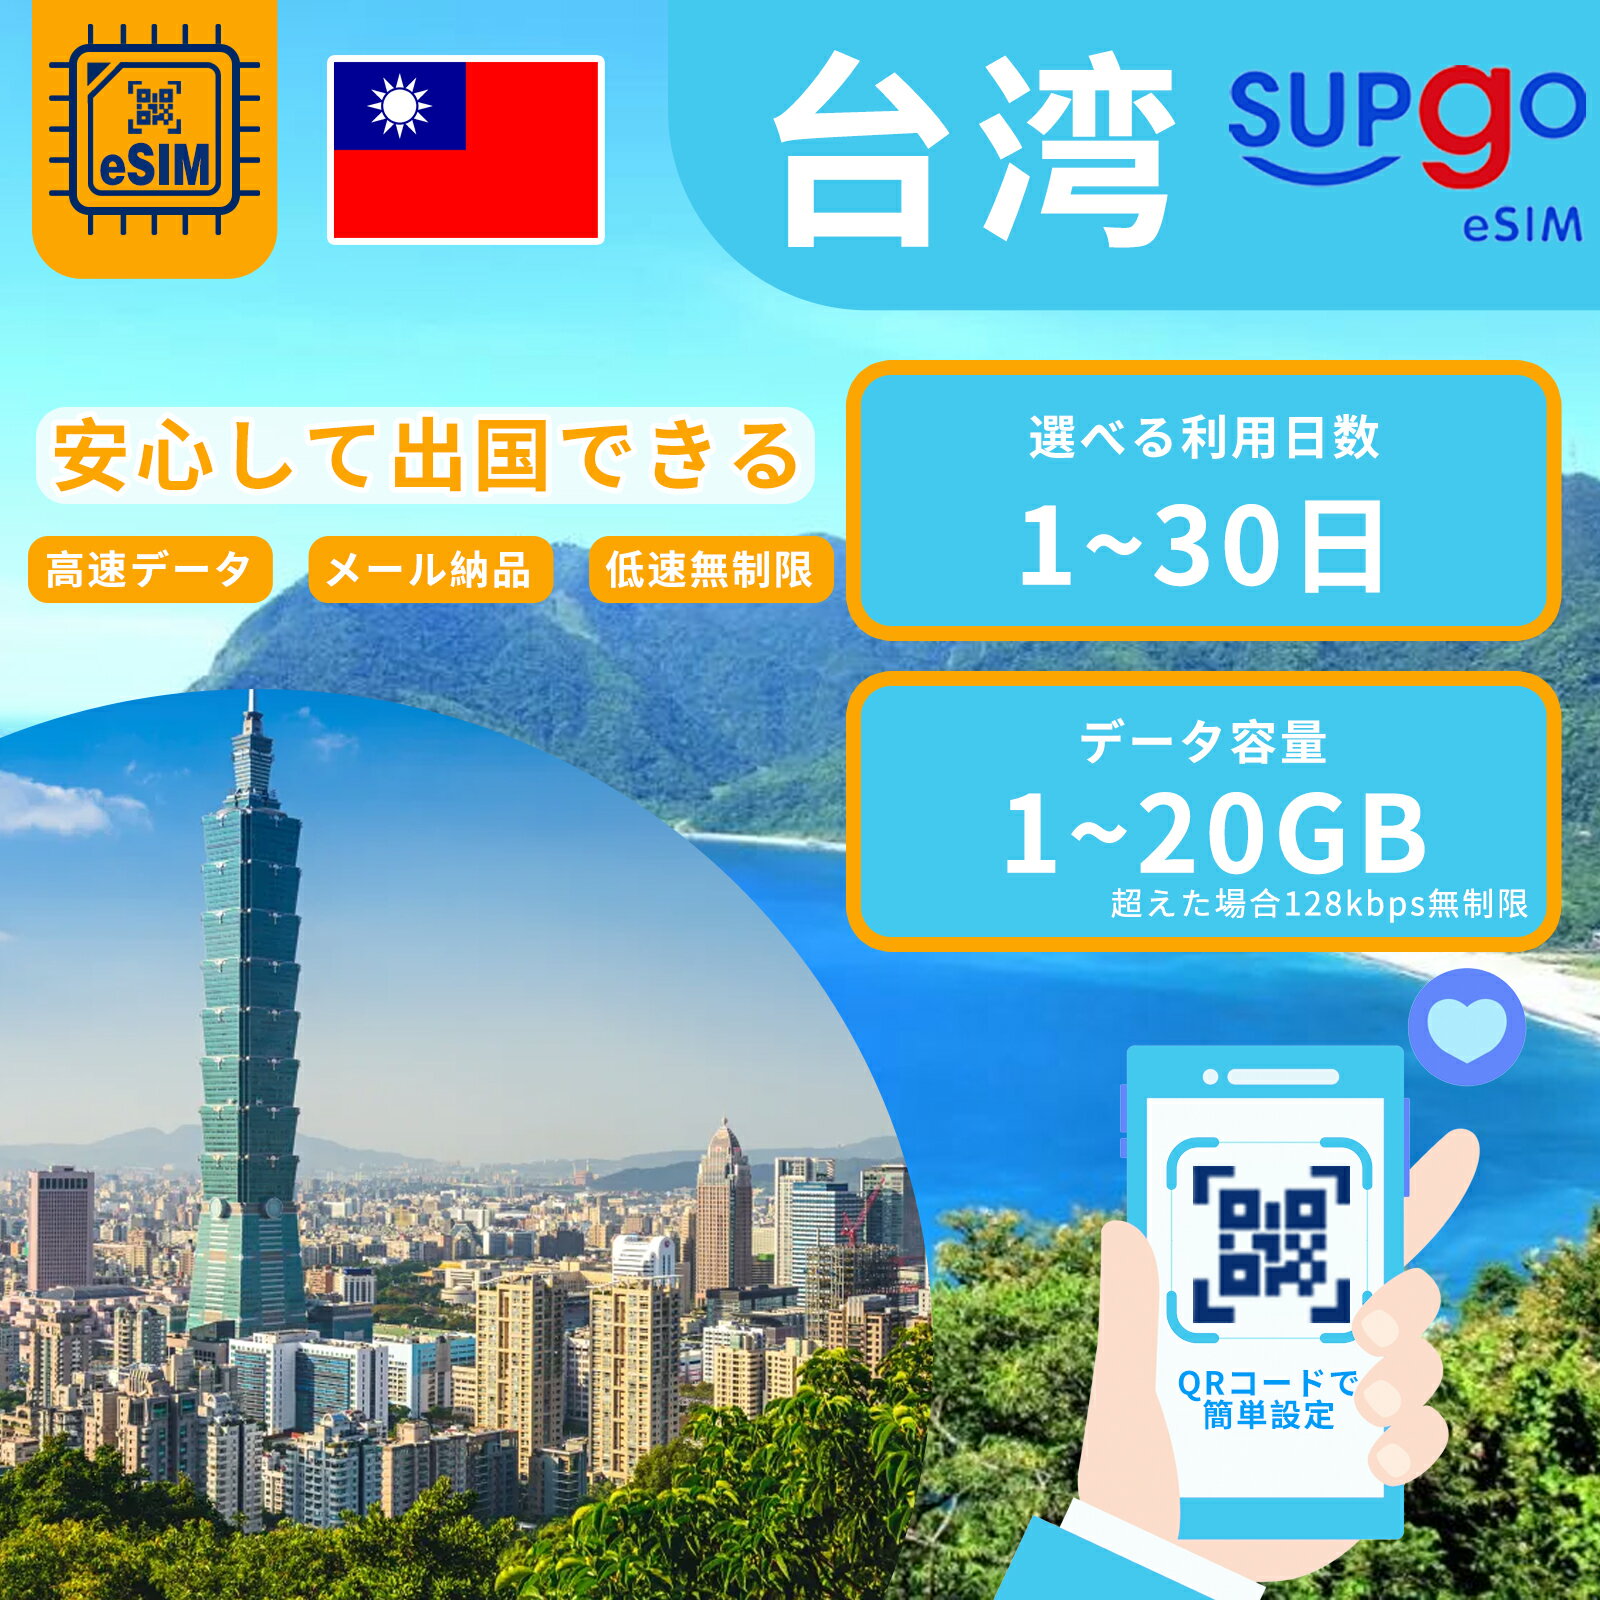 商品情報 ブランド名 SupGO 商品名 Taiwan eSIM 台湾 台北 esimカード esimカード QRコードを読み込んで使える SIMタイプ eSIM 使用可能日数 3日間 5日間 7日間 10日間 15日間 20日間 30日間 データ容量 高速データ1GB/日 高速データ2GB/日 高速データ合計3GB 高速データ合計5GB 高速データ合計10GB 高速データ合計20GB 対応地域 台湾 Can be used in the following regions: Taiwan 注意事項 電話およびSMSの機能がありません。 プランのデータ容量を超えると、128kbpsにスピードダウン 30日以内に携帯電話に登録してください。それ以降は期限切れとなります。 登録されたeSIMが現地で自動的にアクティベートされます。 海外に行く当日にeSIMのQRコードをスキャンすることをお勧めいたします。 ご注意：eSIM通信プランに日本が含まれている場合、日本で設定とアクティベート当日に時間がカウントされます。 10日間のデータプランは、3月20日18時に設定する場合、29日23時59分59秒までご利用いただけます。 期間切れとなったら、手動で削除をお願いいたします。